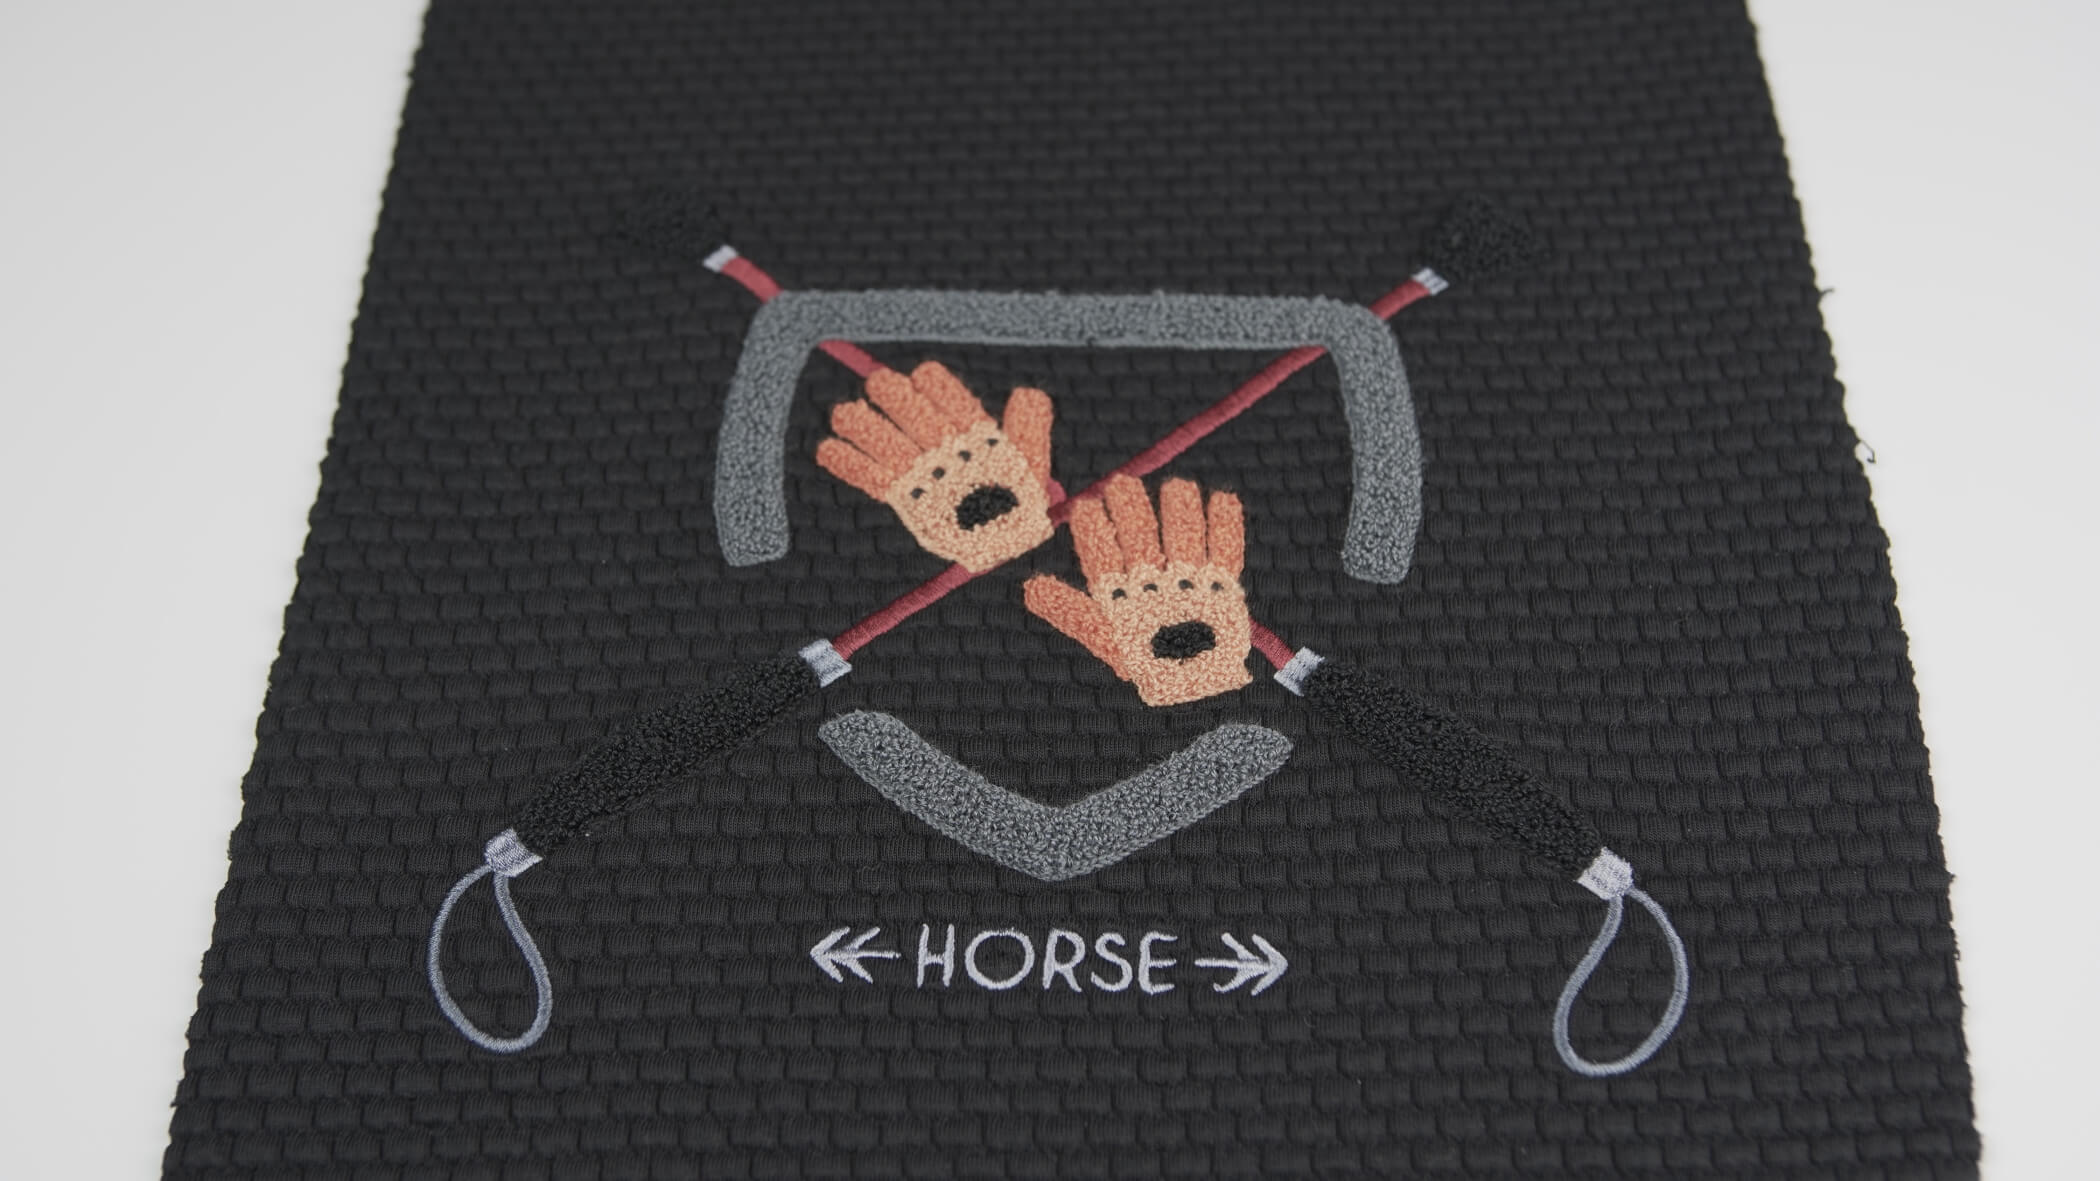 Bordado de Ponto Alto - Chenille onde se vê um brasão com elementos ligados à equitação e a palavra Horse